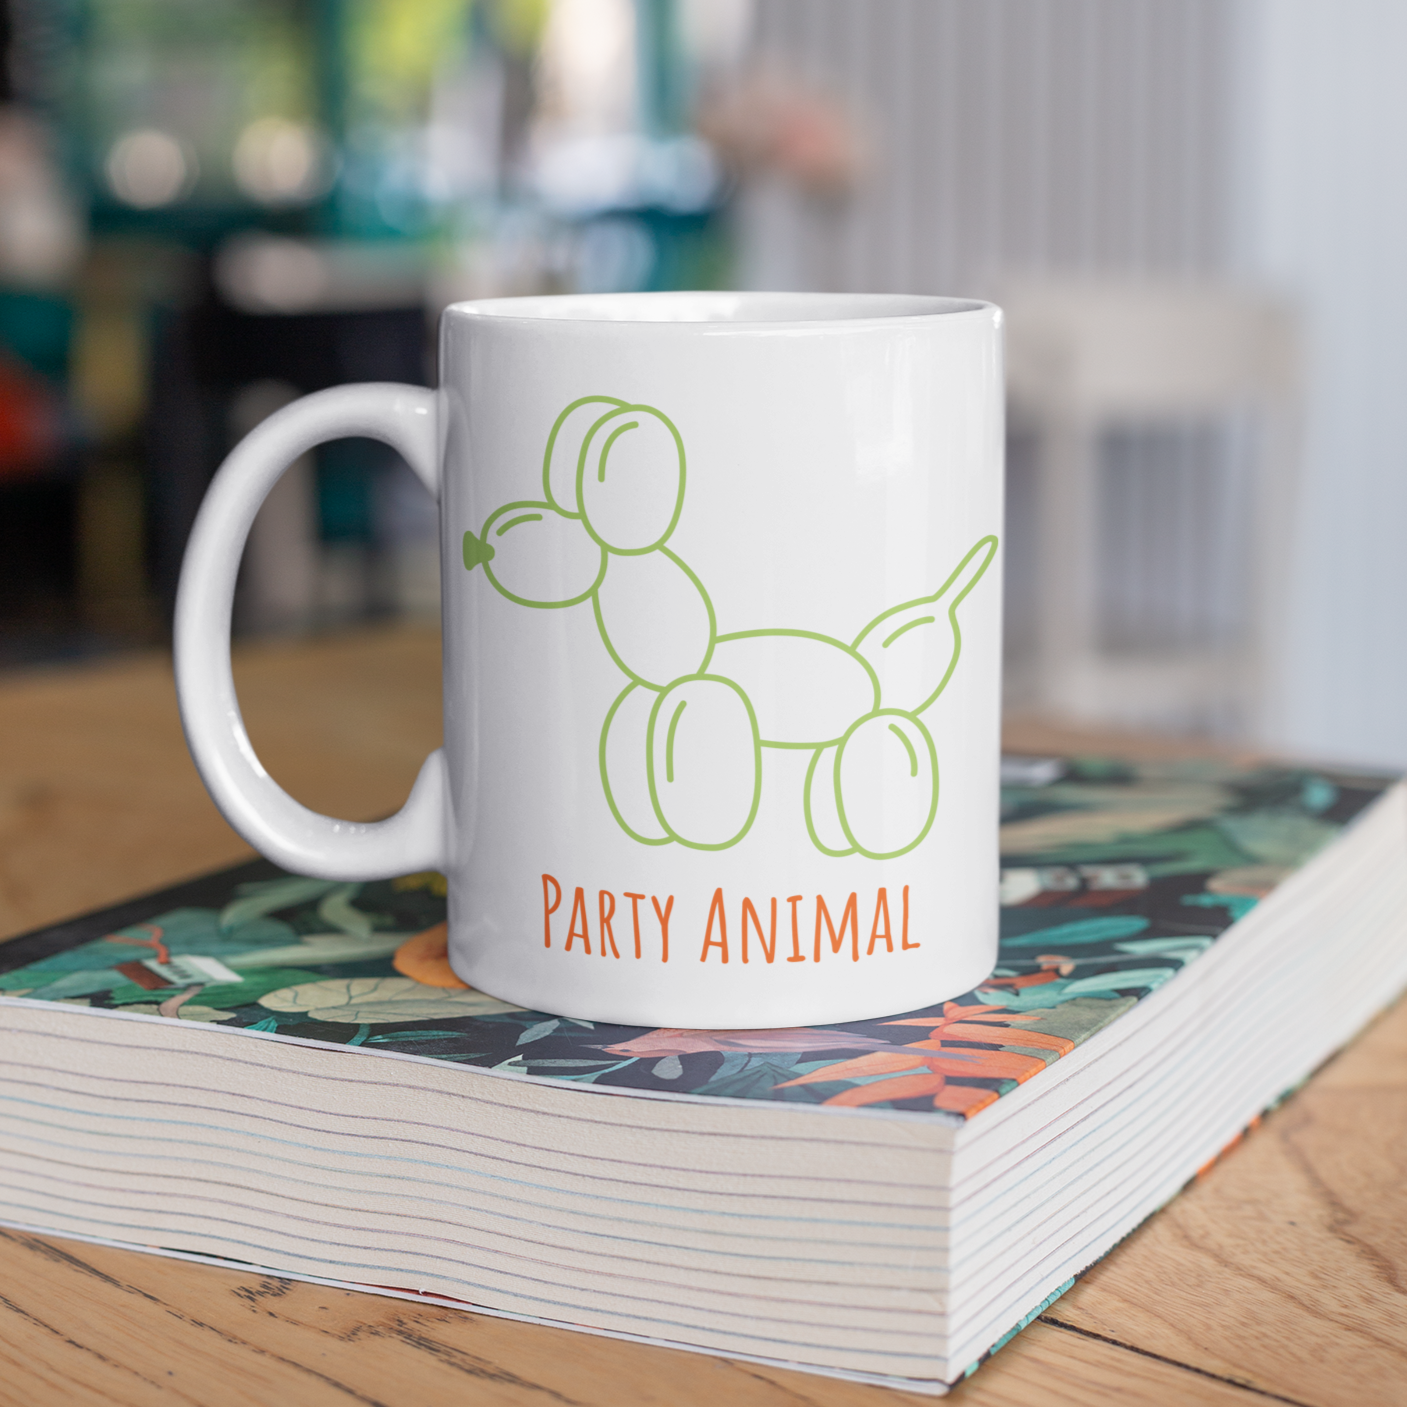 Party Animal - 11oz Ceramic Mug 11 oz Mug animal Funny